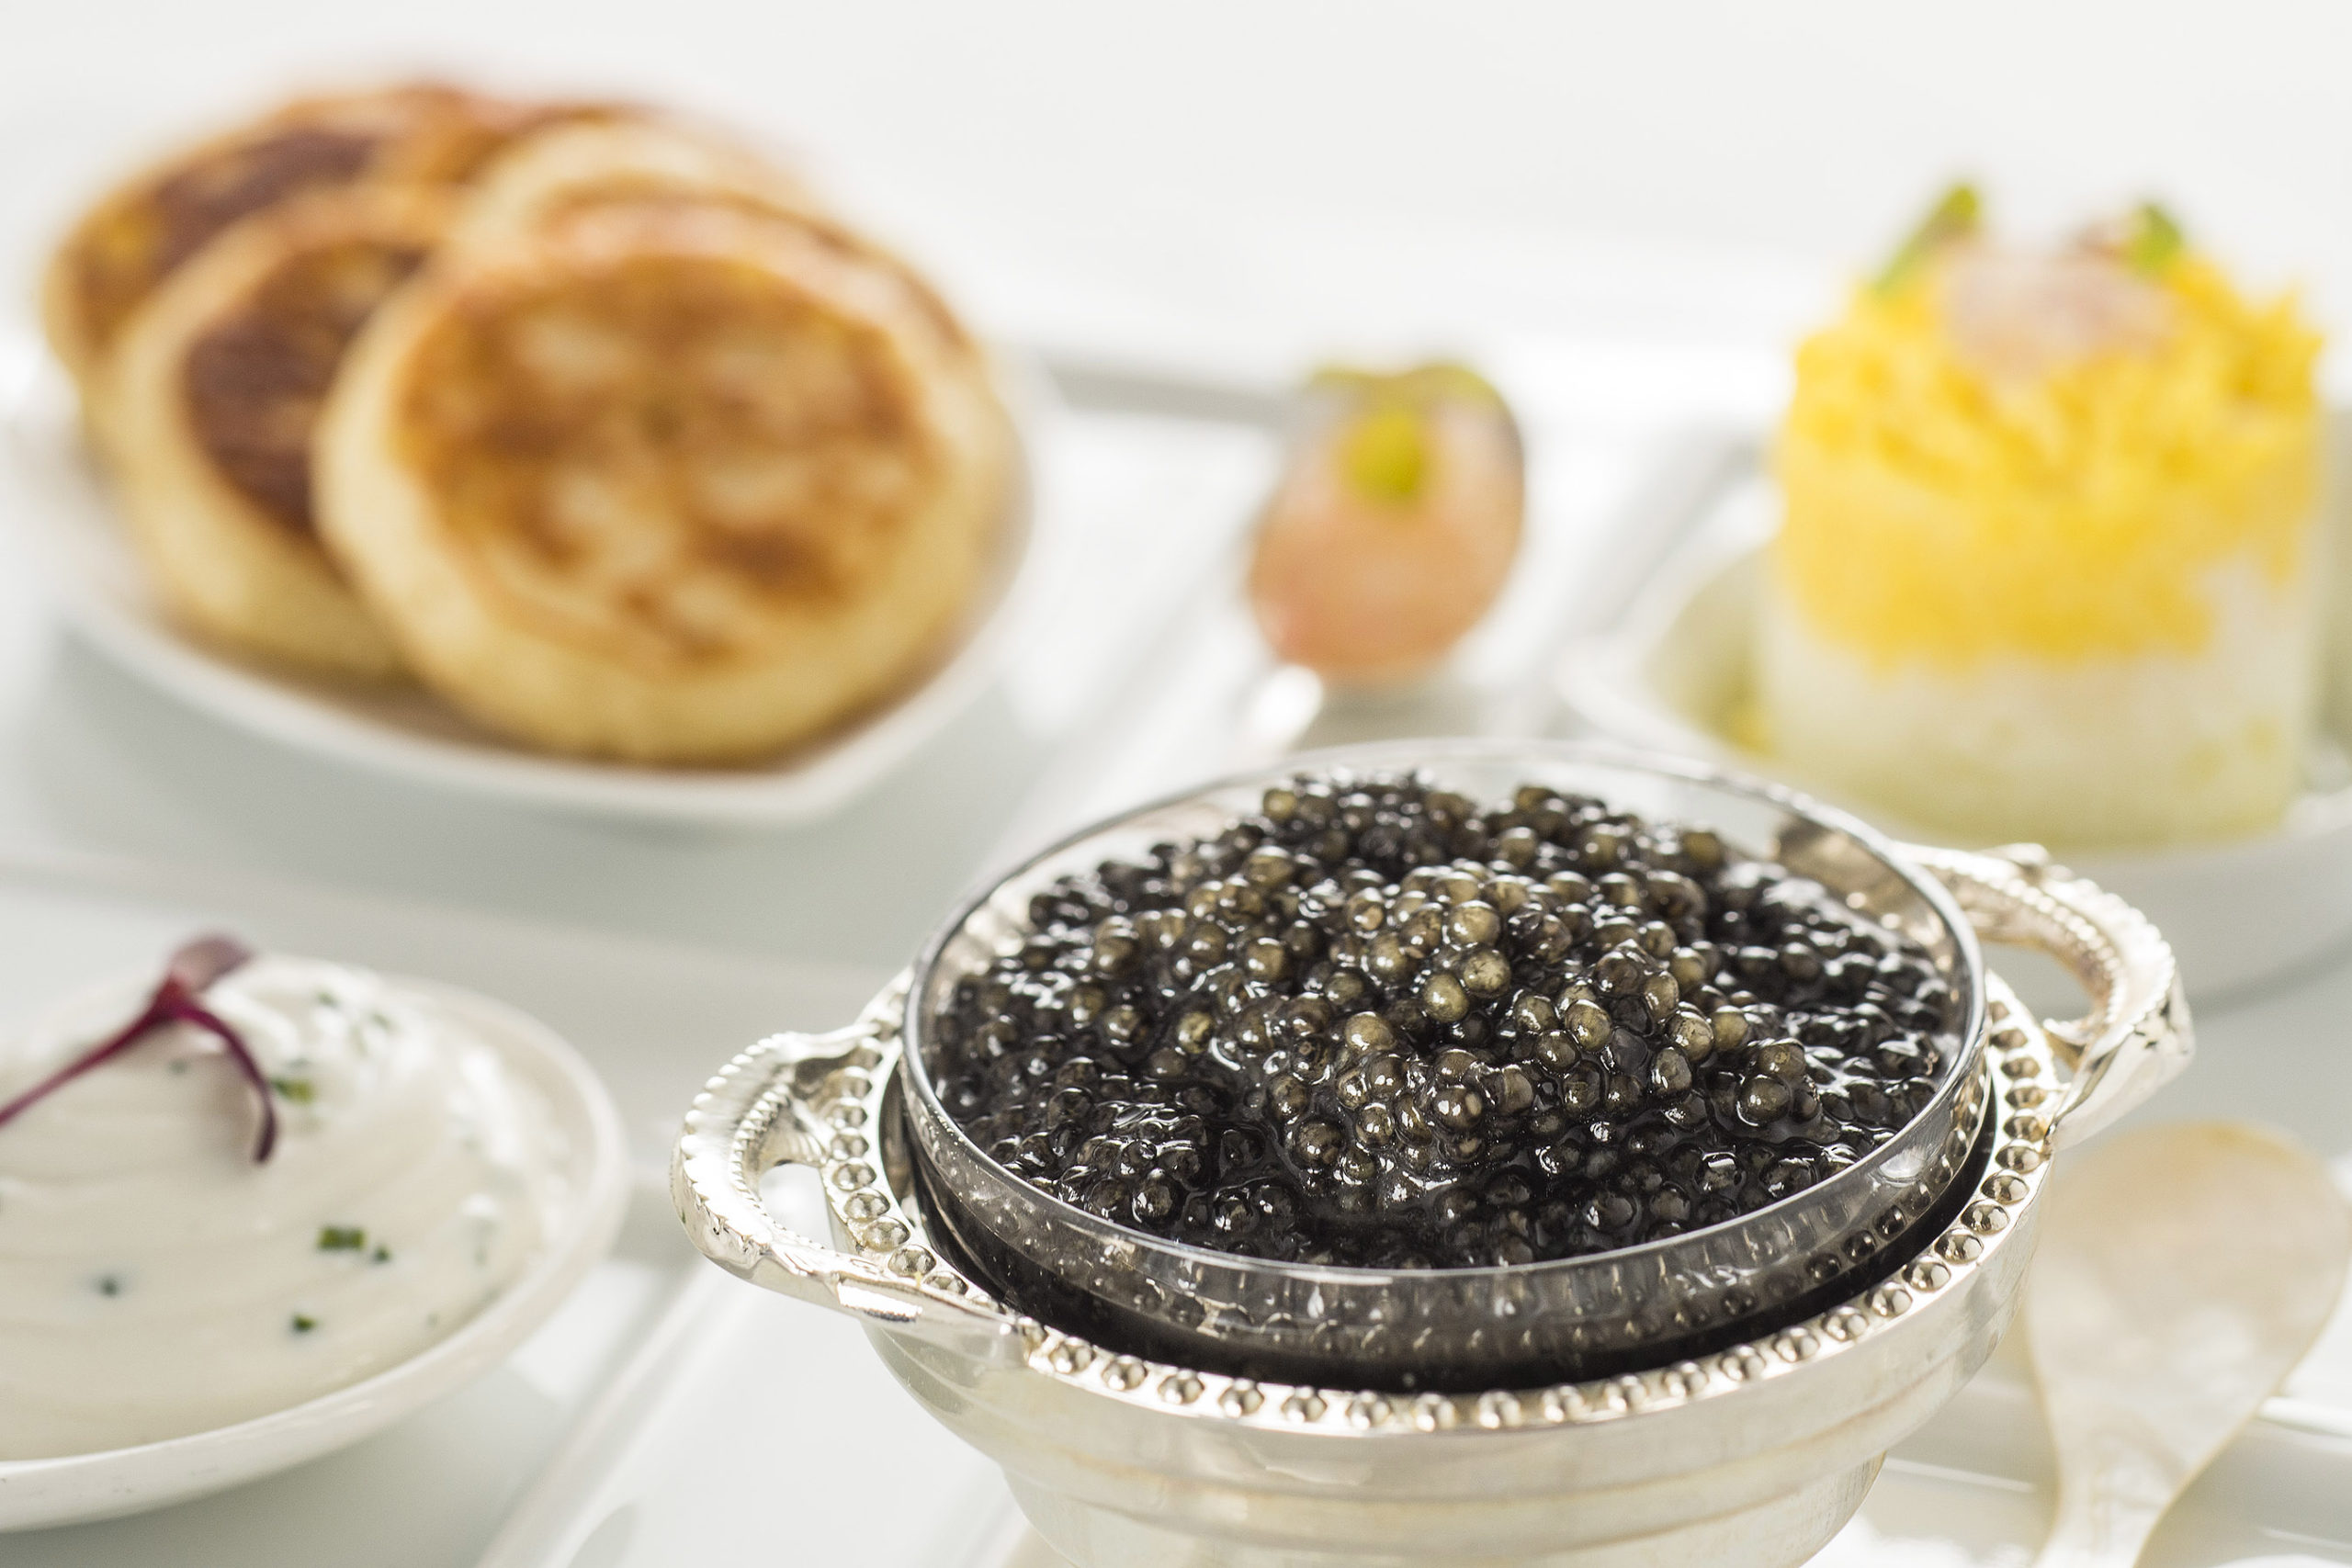 Caviar selections